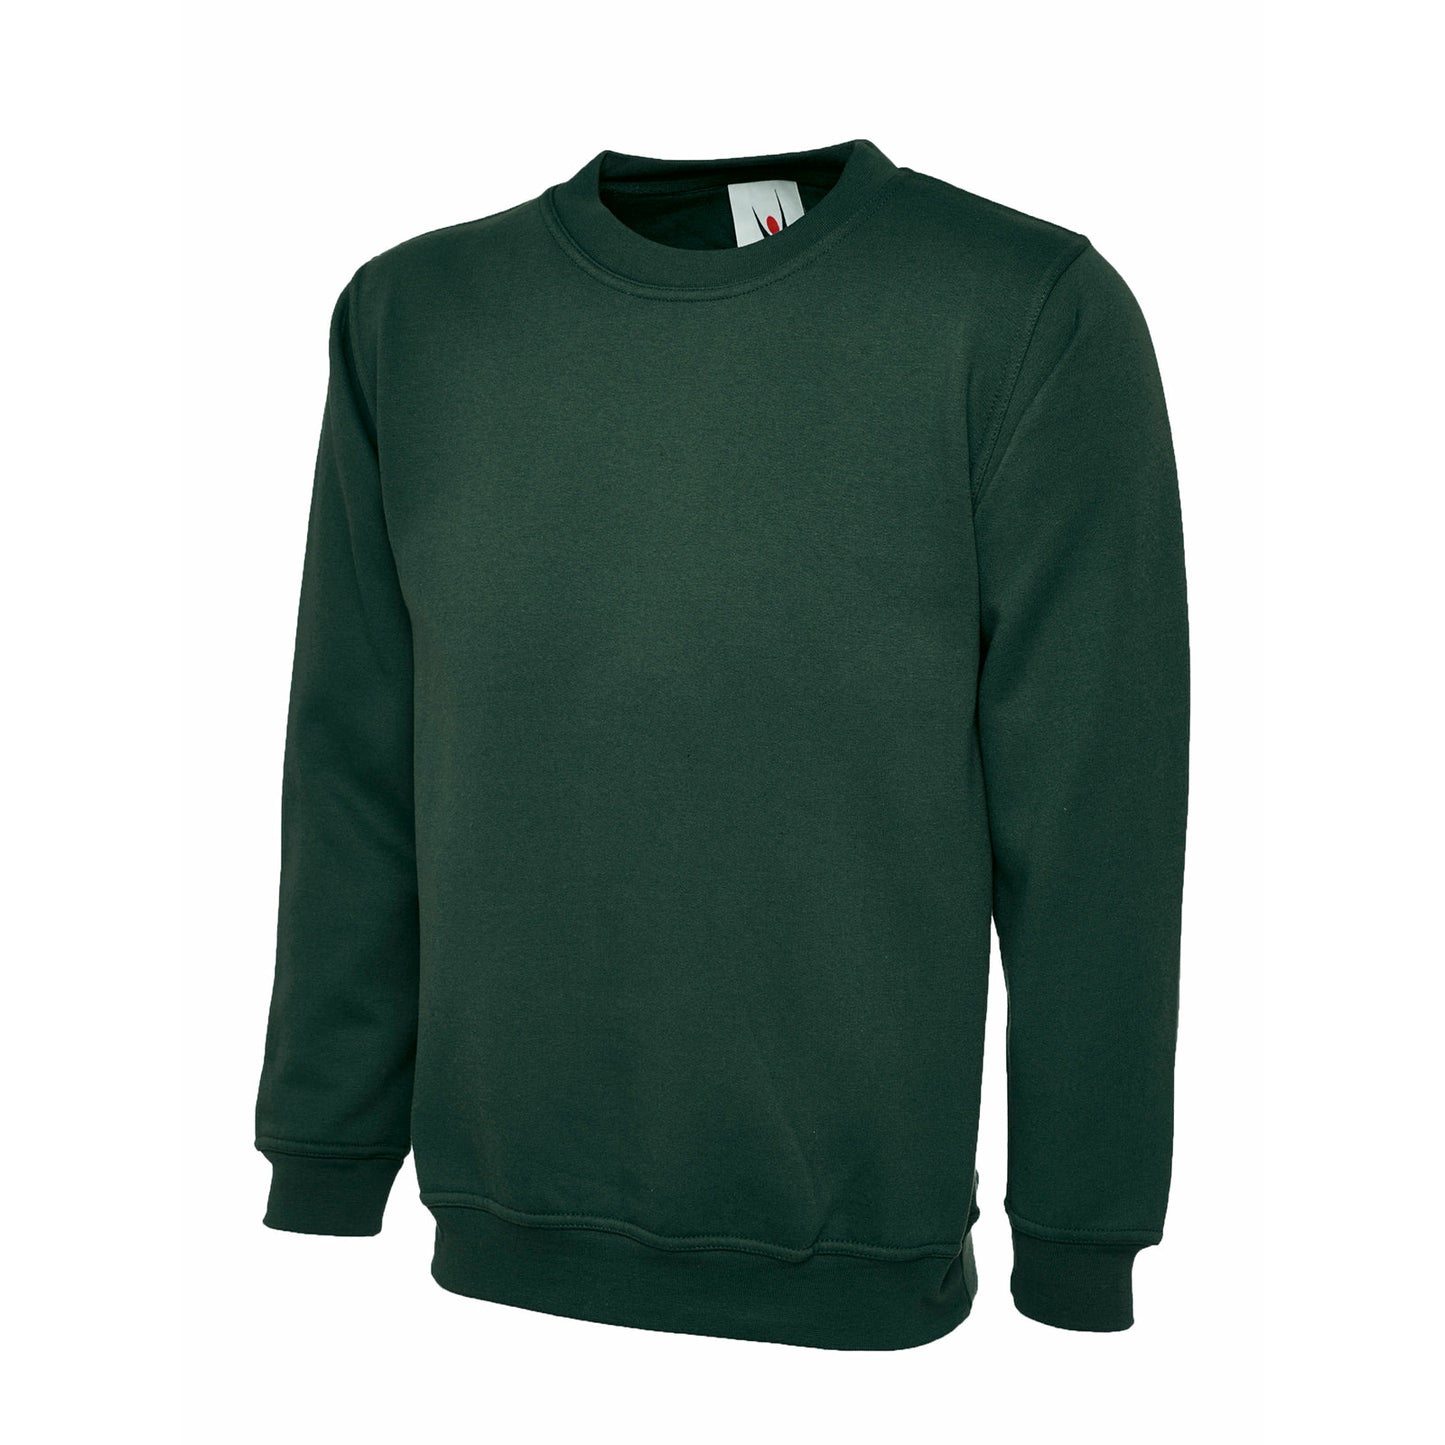 The UX Children's Sweatshirt - Bottle Green